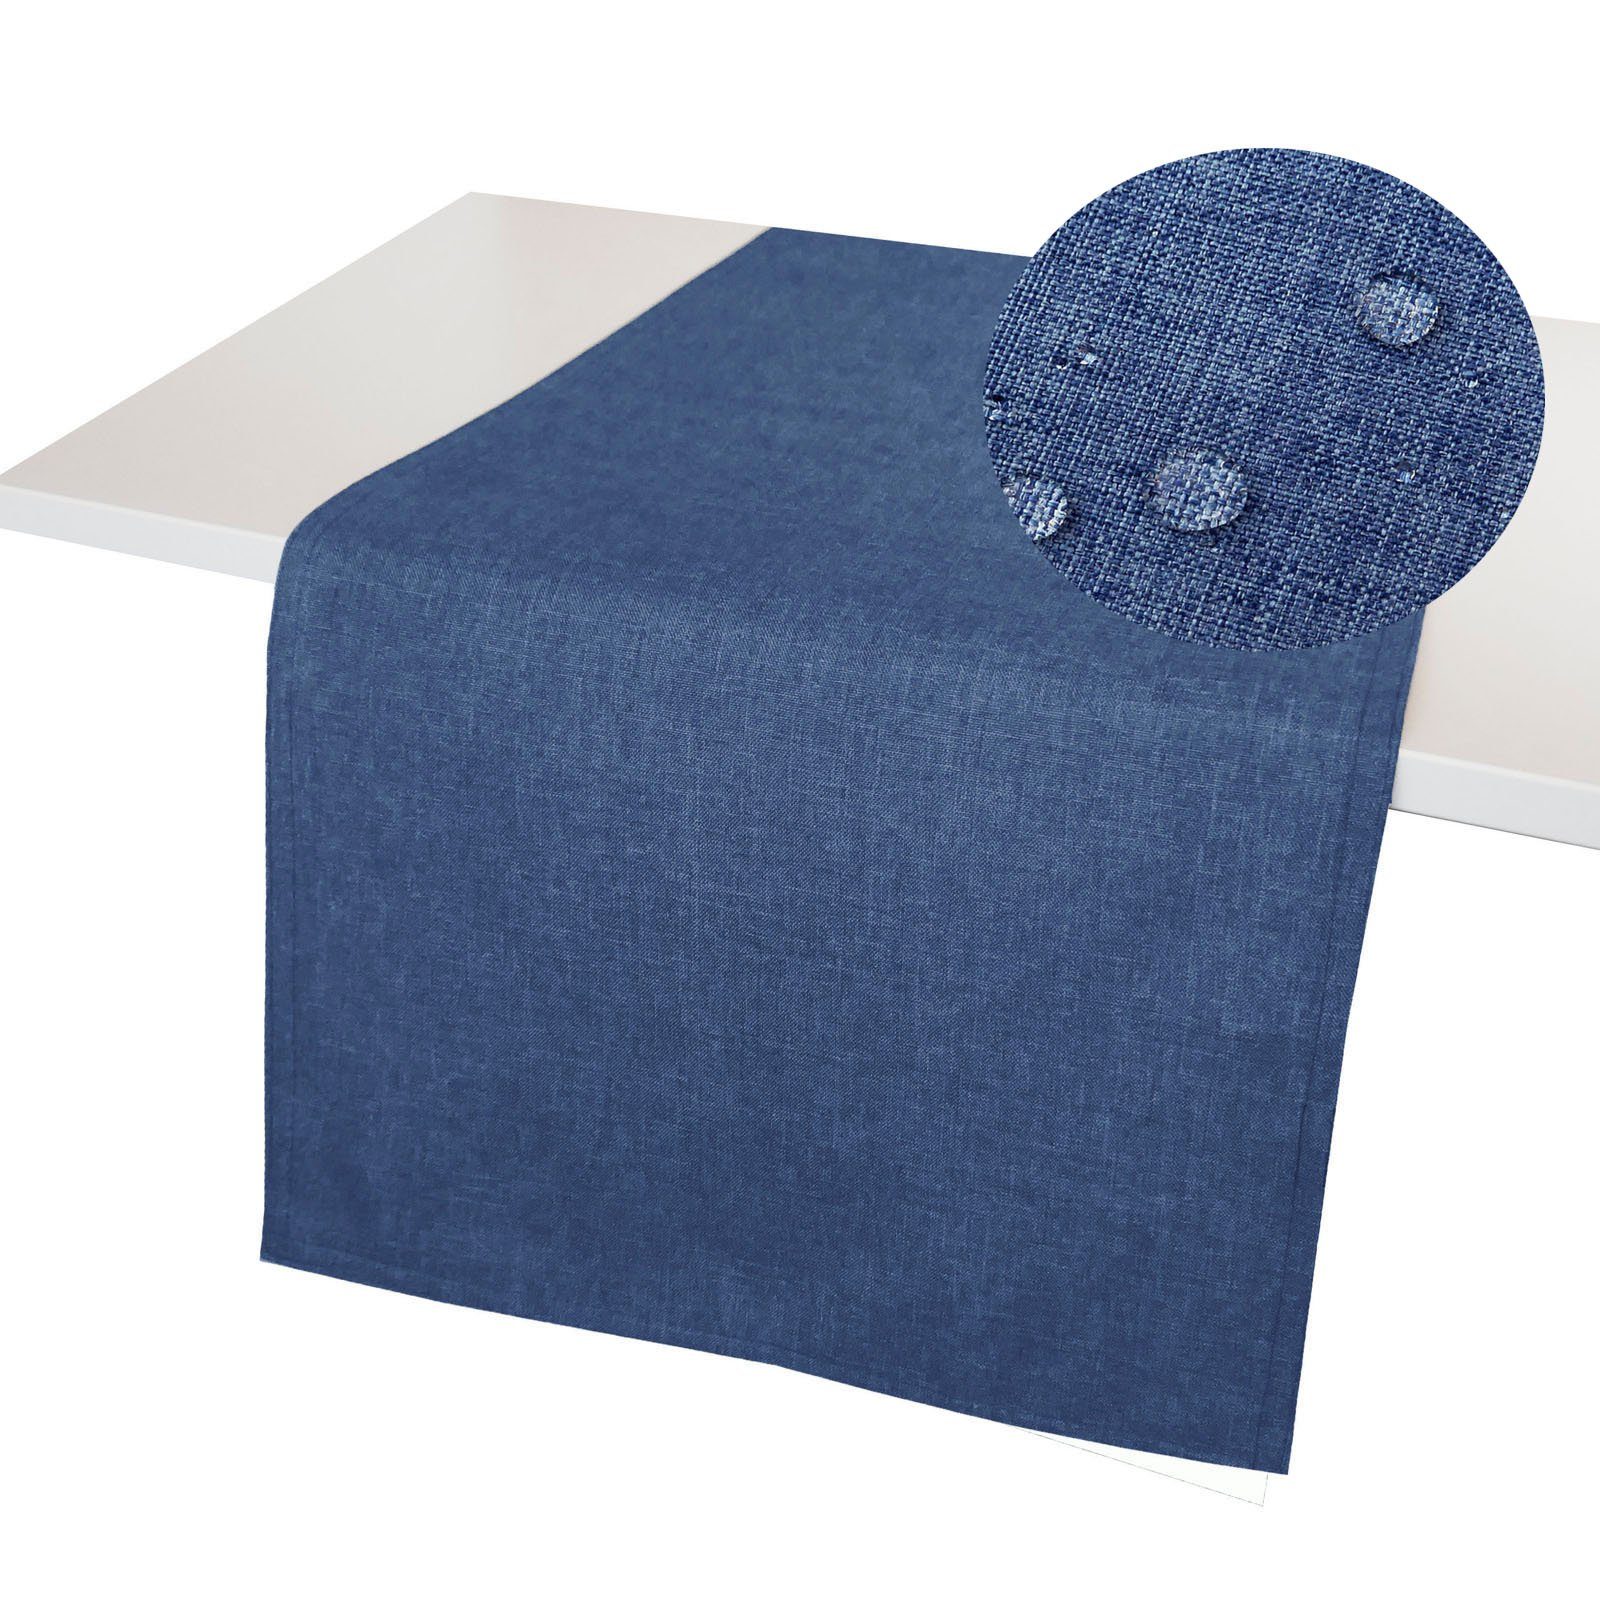 LEINEN-OPTIK Lotuseffekt Windstabil, Tischläufer waschbar Blau Brilliant Fleckschutz Tischläufer